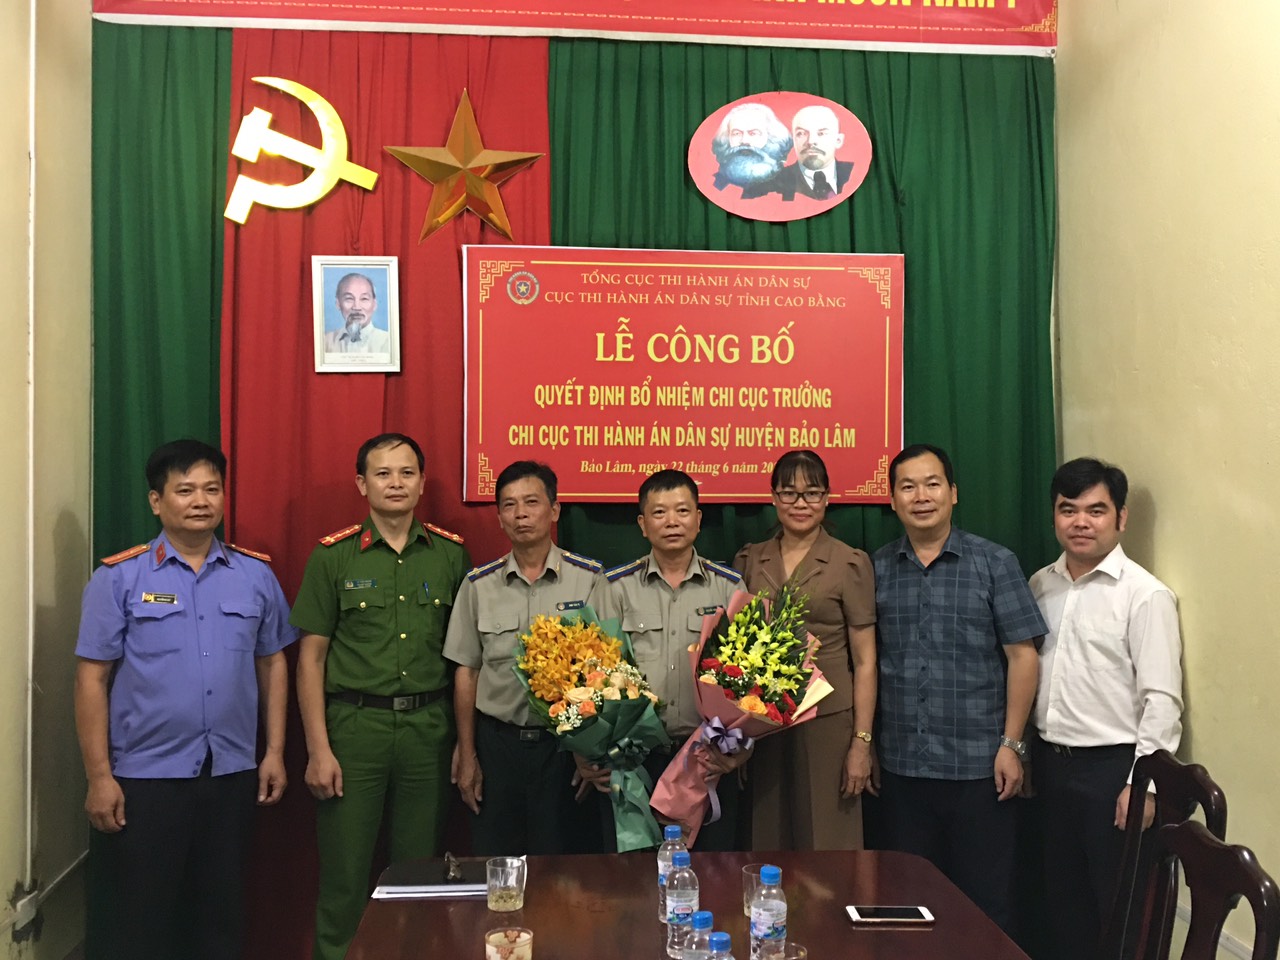 Lễ công bố quyết định bổ nhiệm Chi cục trưởng Chi cục Thi hành án dân sự huyện Bảo Lâm